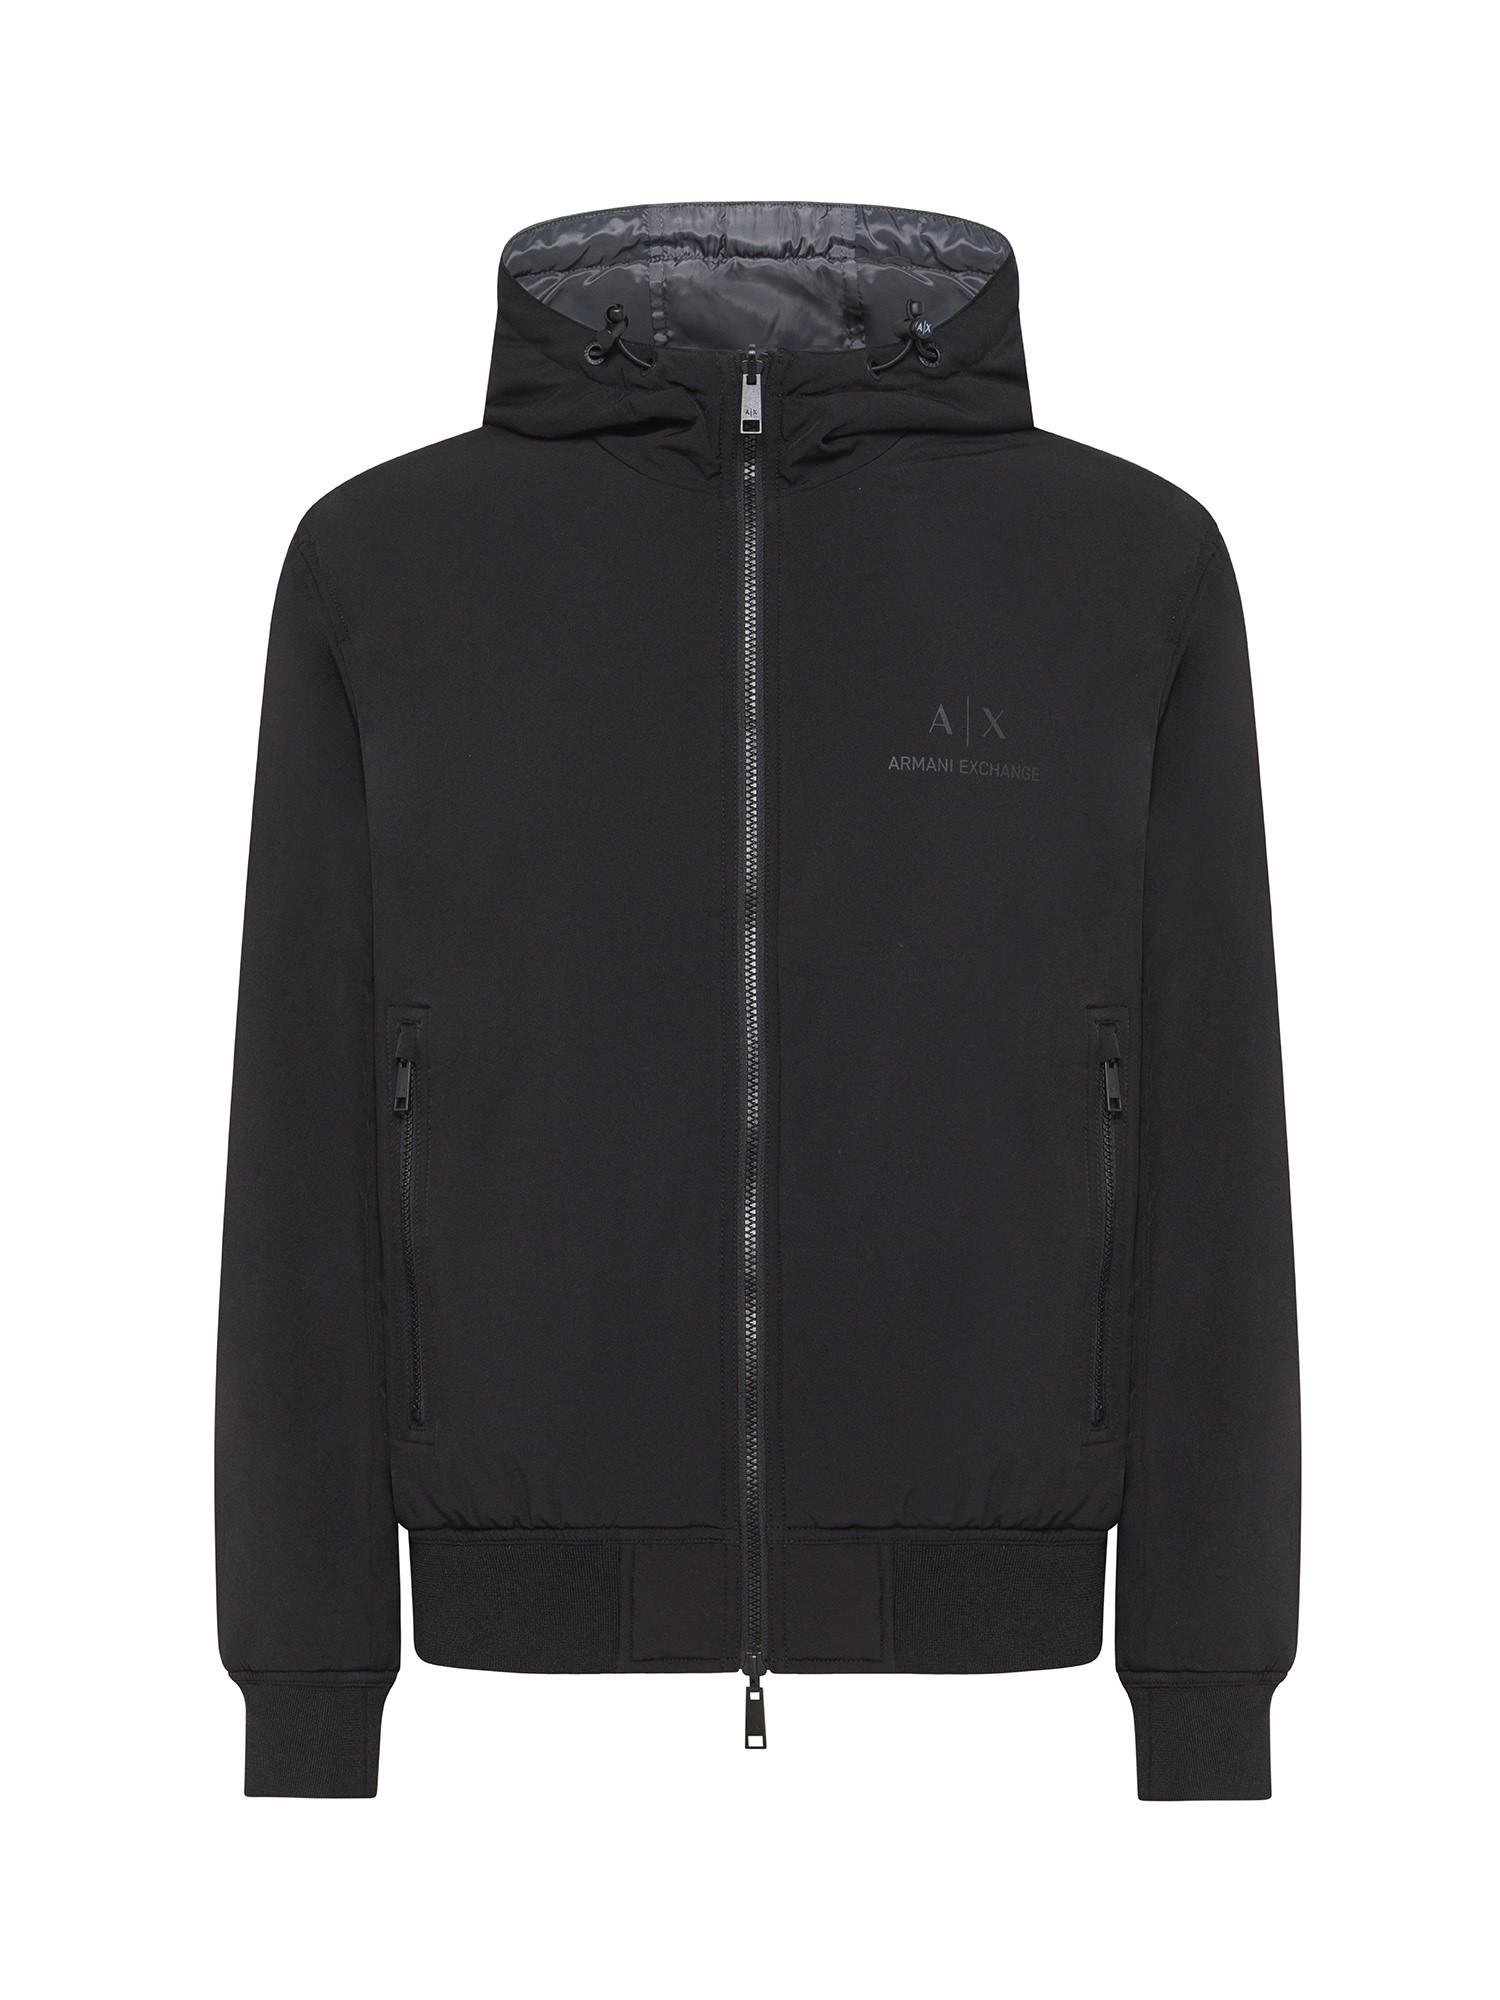 Armani Exchange - Reversible nylon jacket, Black, large image number 0